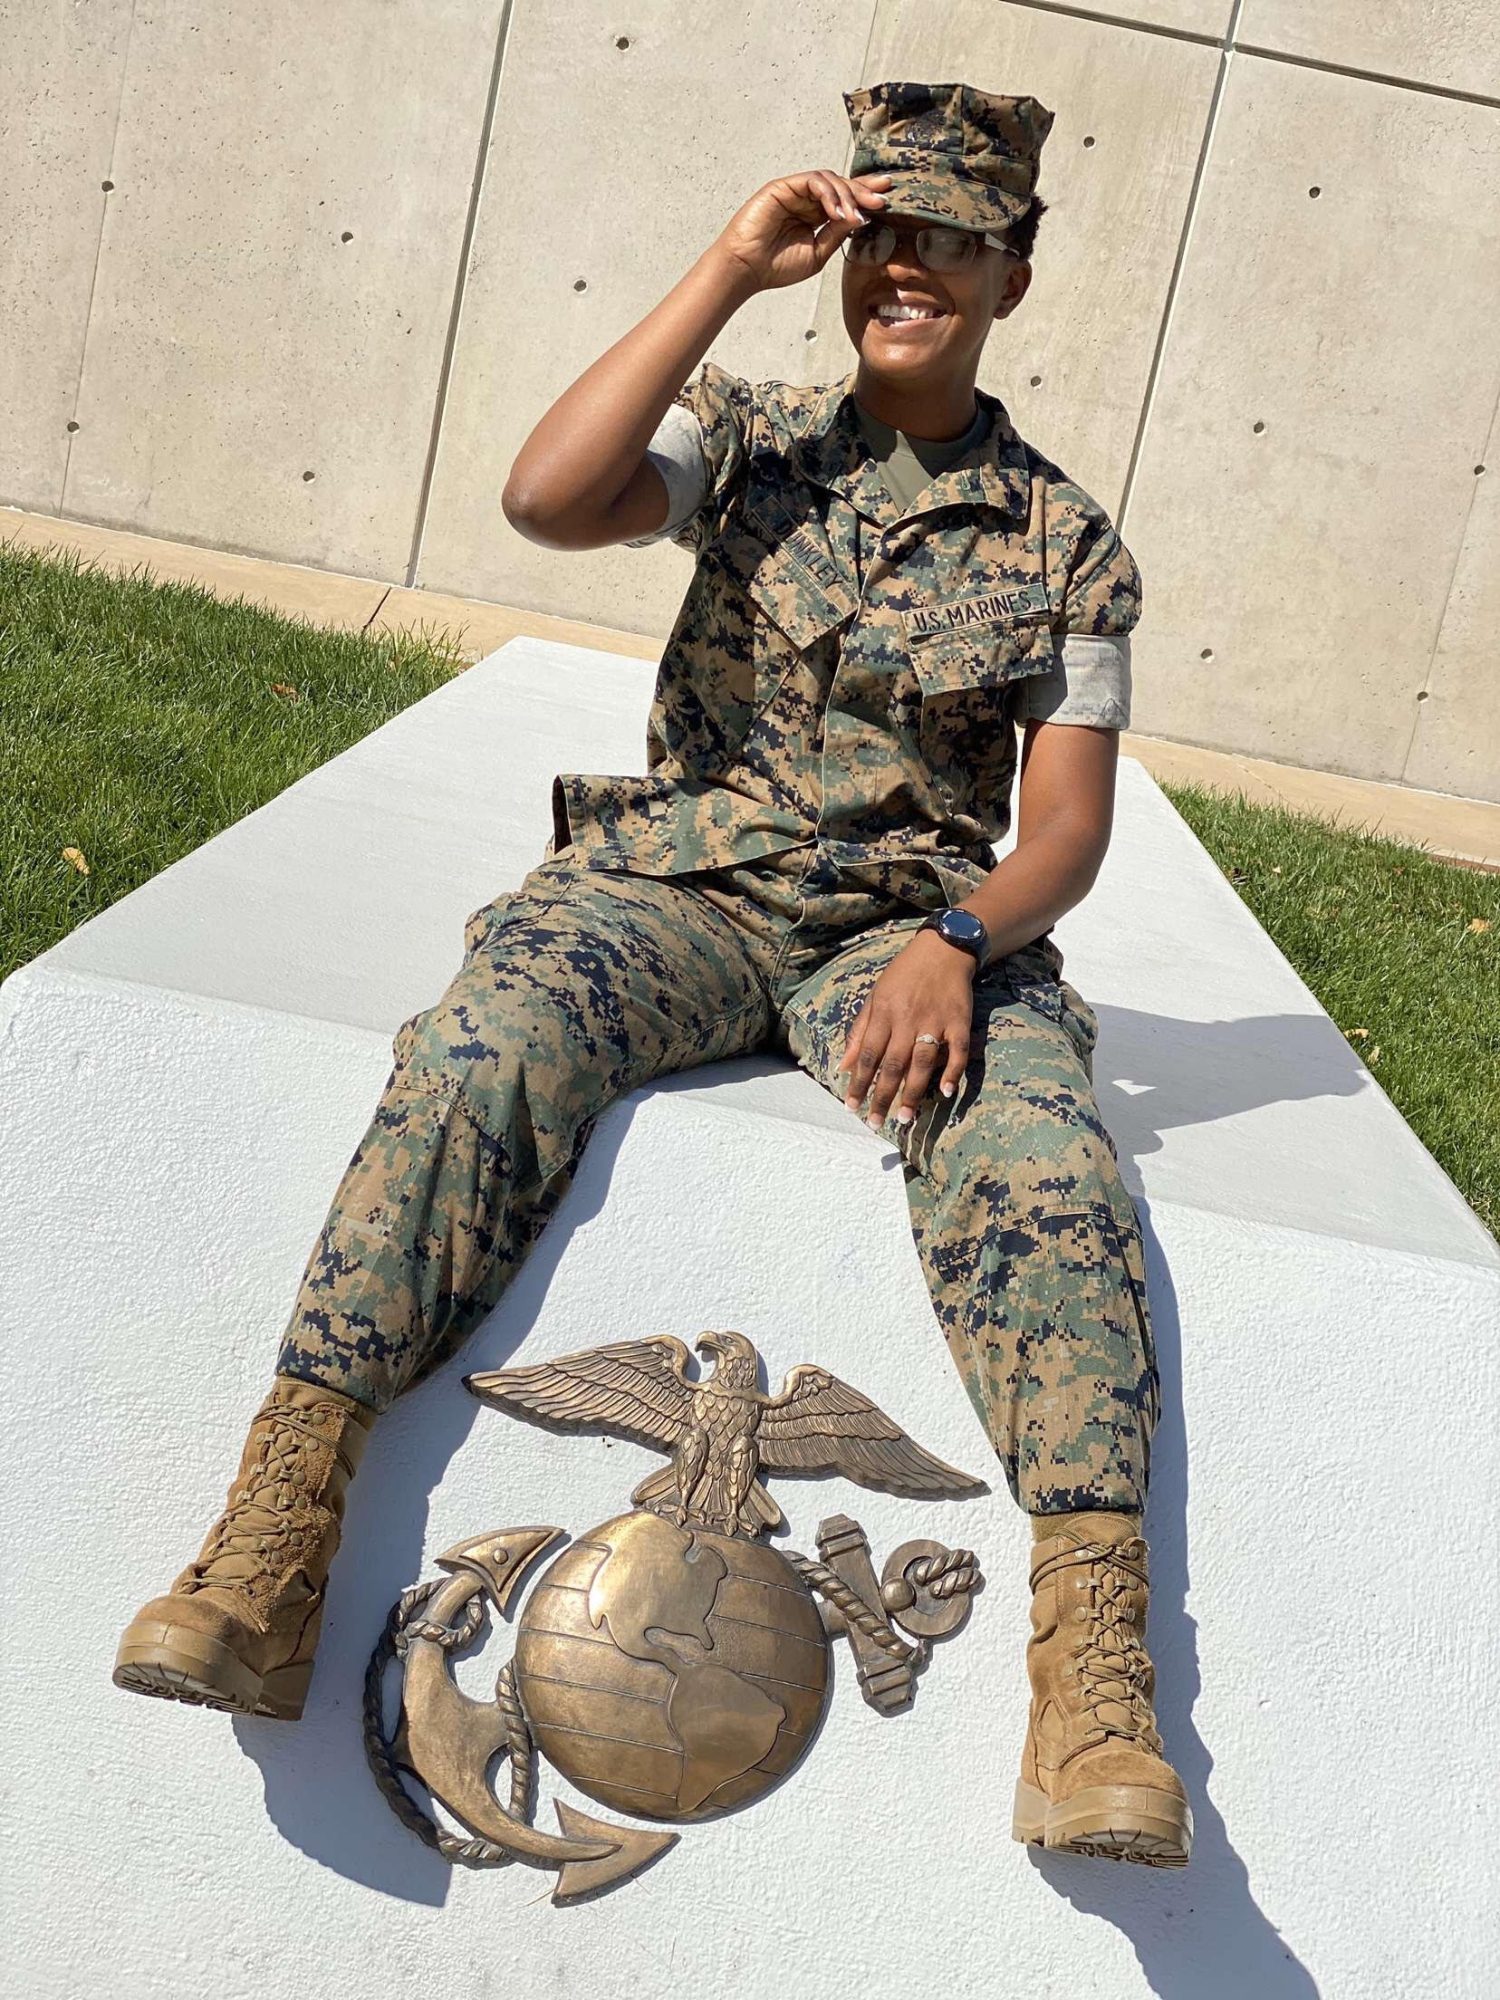 Delicia Ofikulu in Marine Corps uniform